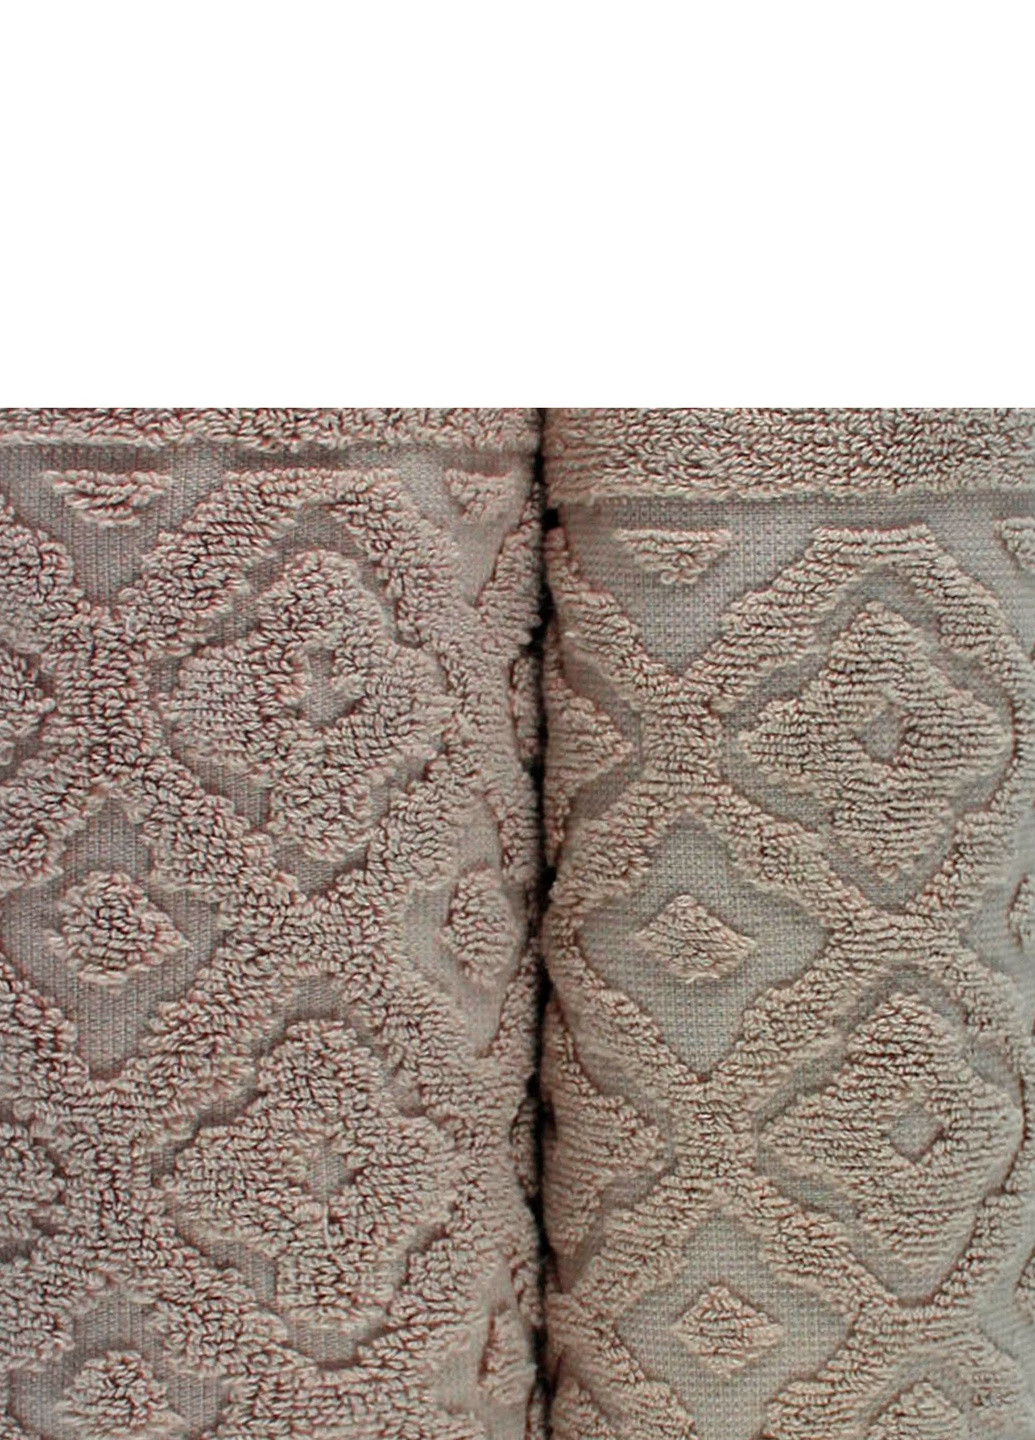 Bulgaria-Tex полотенце махровое lima, жаккардовое, с бордюром, мокко, размер 70x140 cm светло-коричневый производство - Болгария